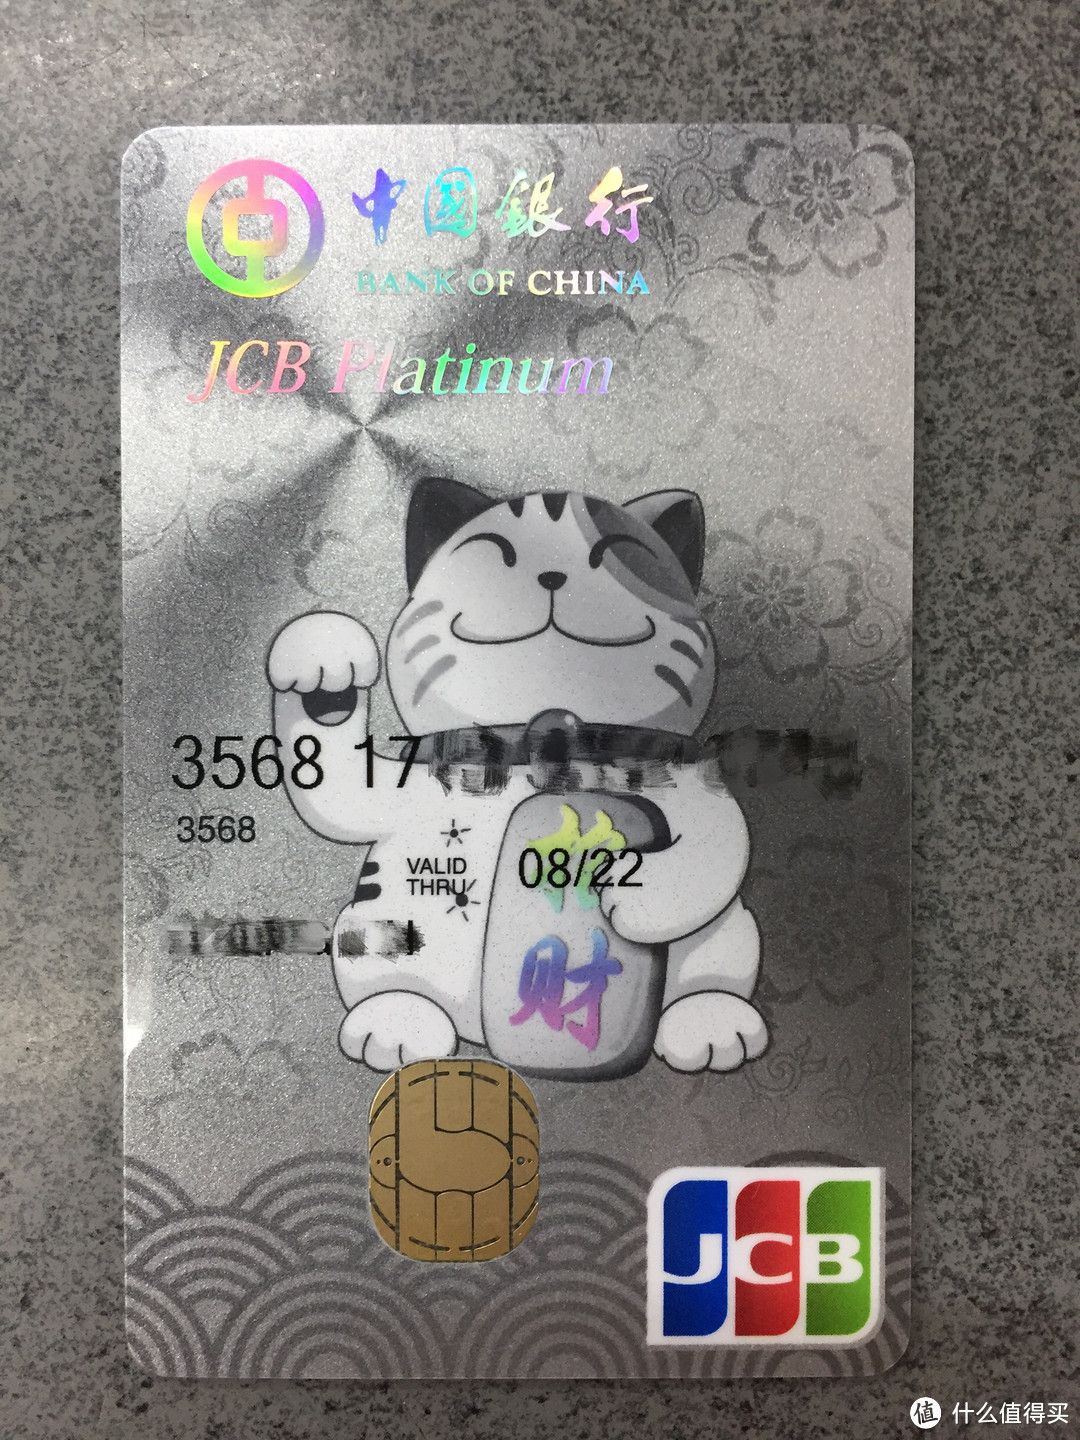 中行JCB招财猫卡铁粉的第一张白金卡迅速网申成功